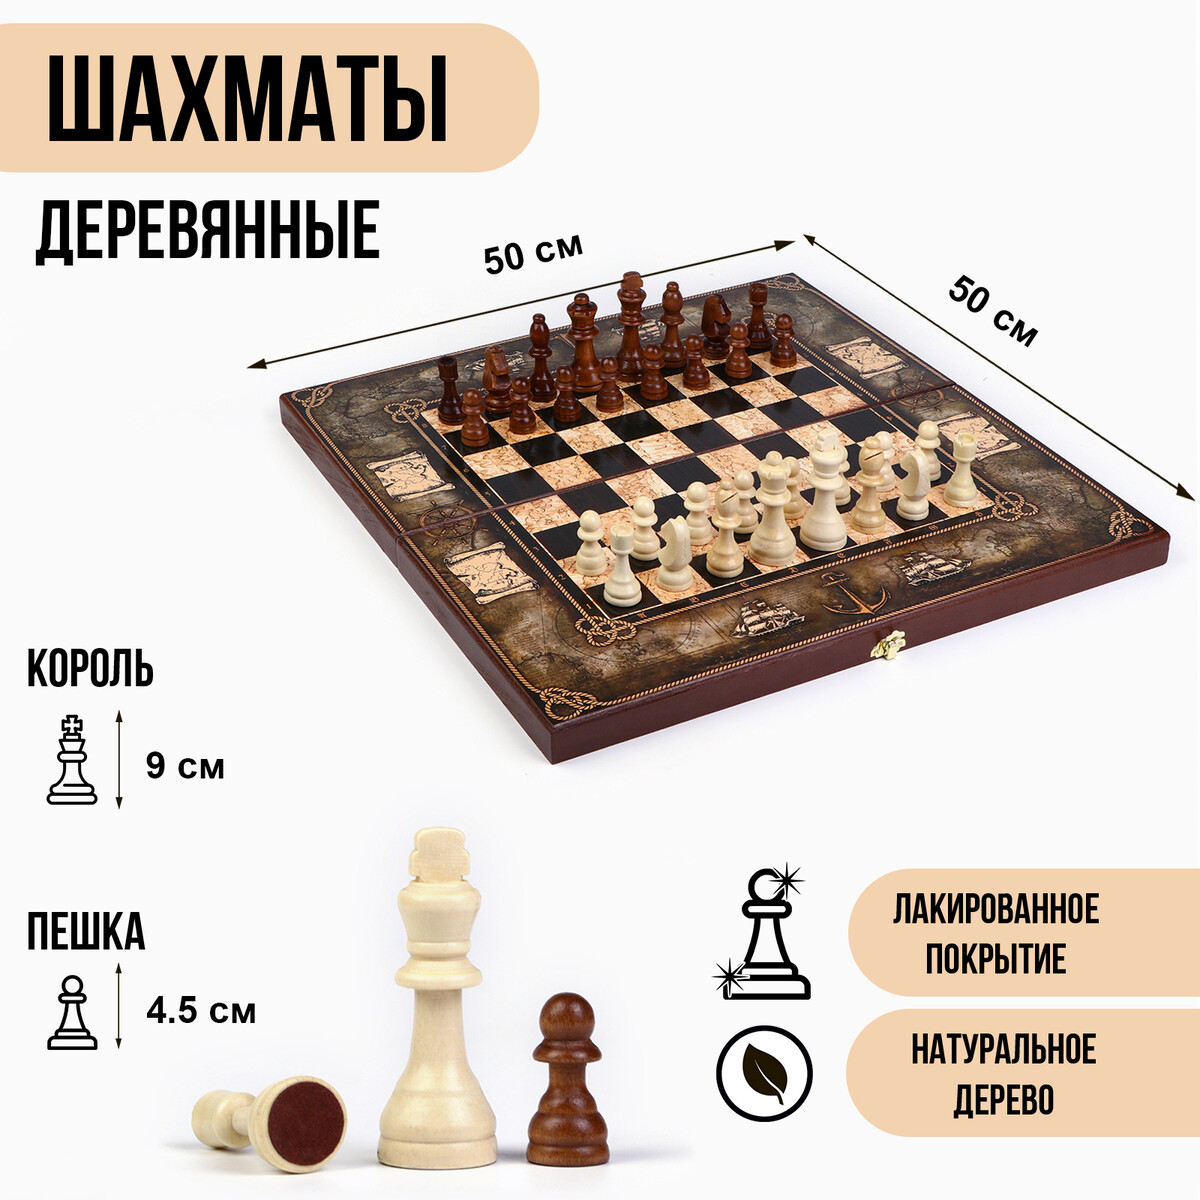 Шахматы деревянные 50х50 см шахматы деревянные гроссмейстерские турнирные король h 10 5 см пешка h 5 3 см